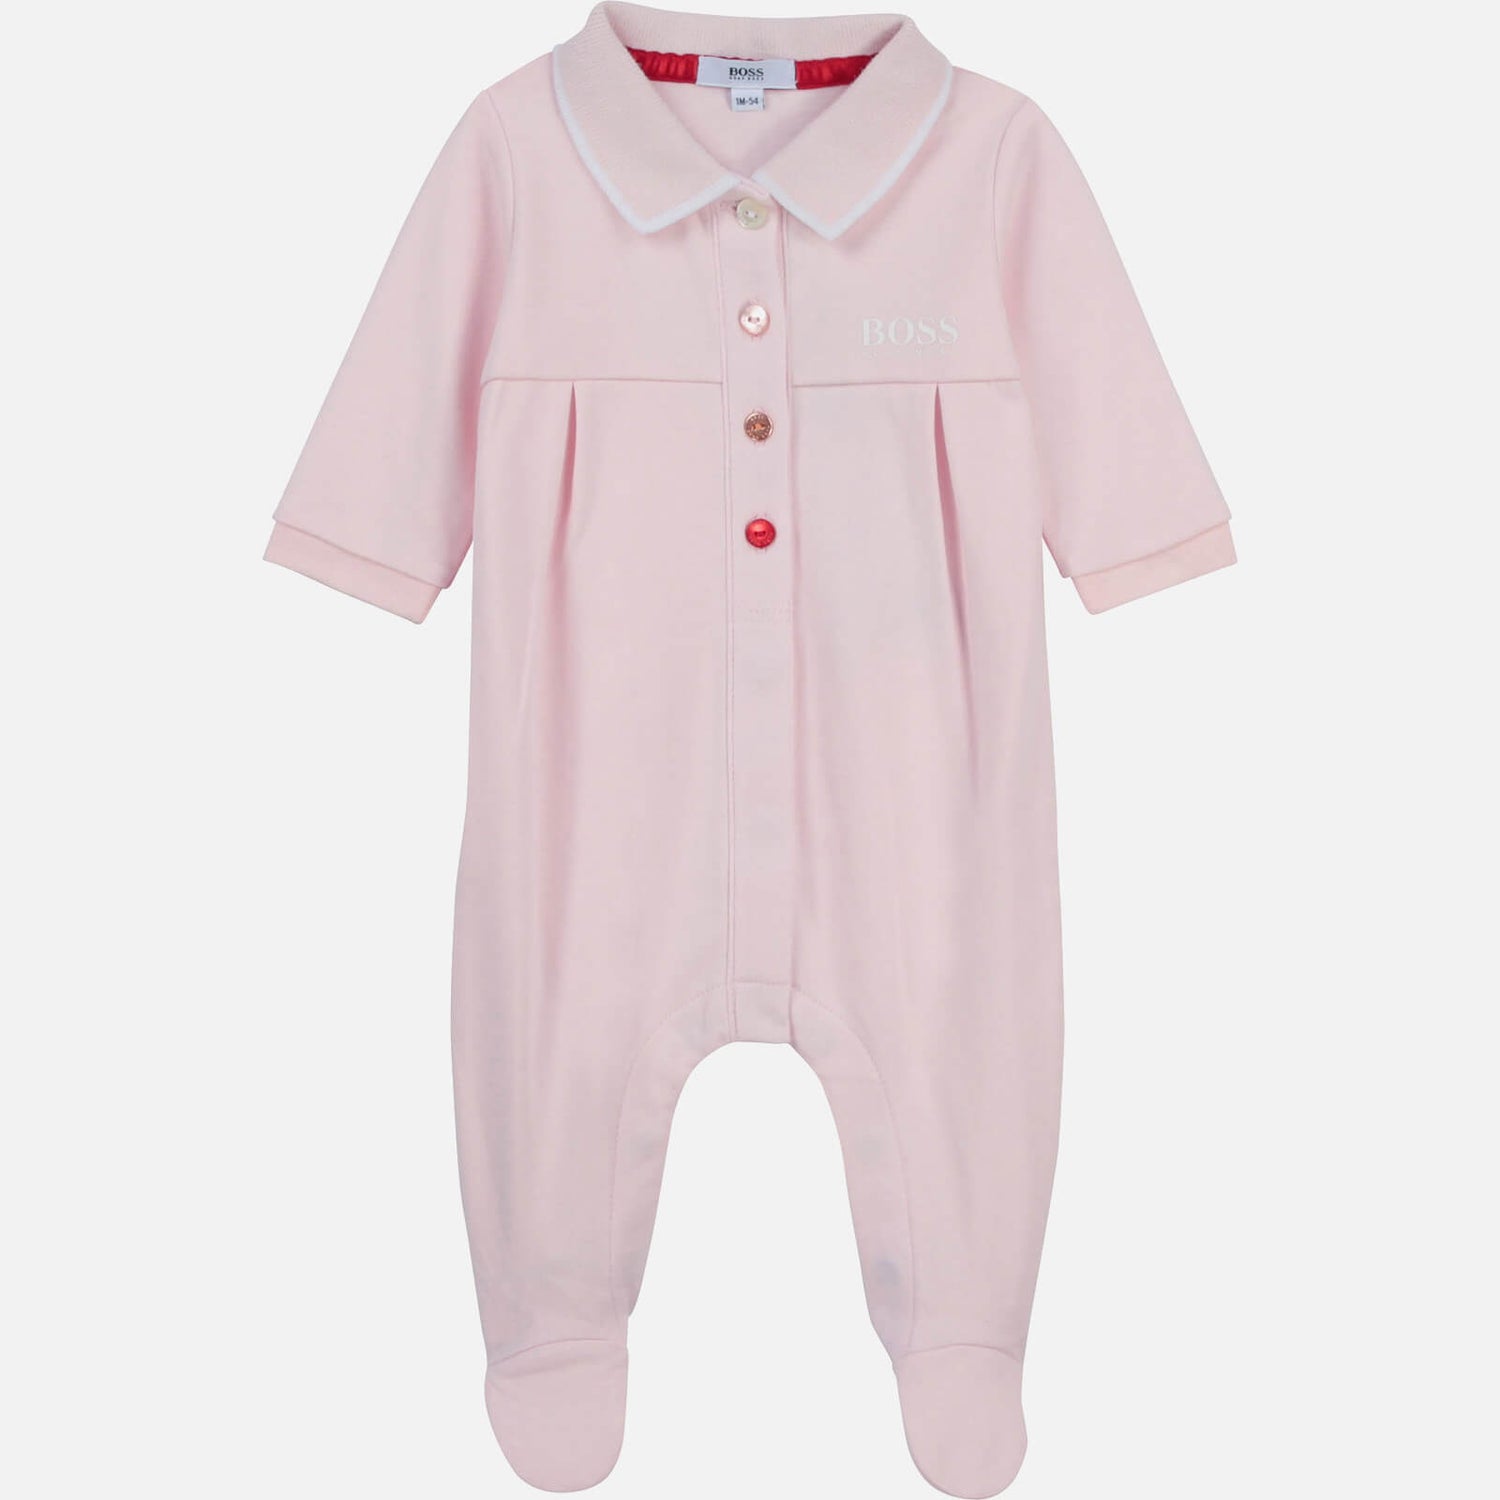 Hugo Boss Baby Girls' Pyjama Baby Gro - Pale Pink